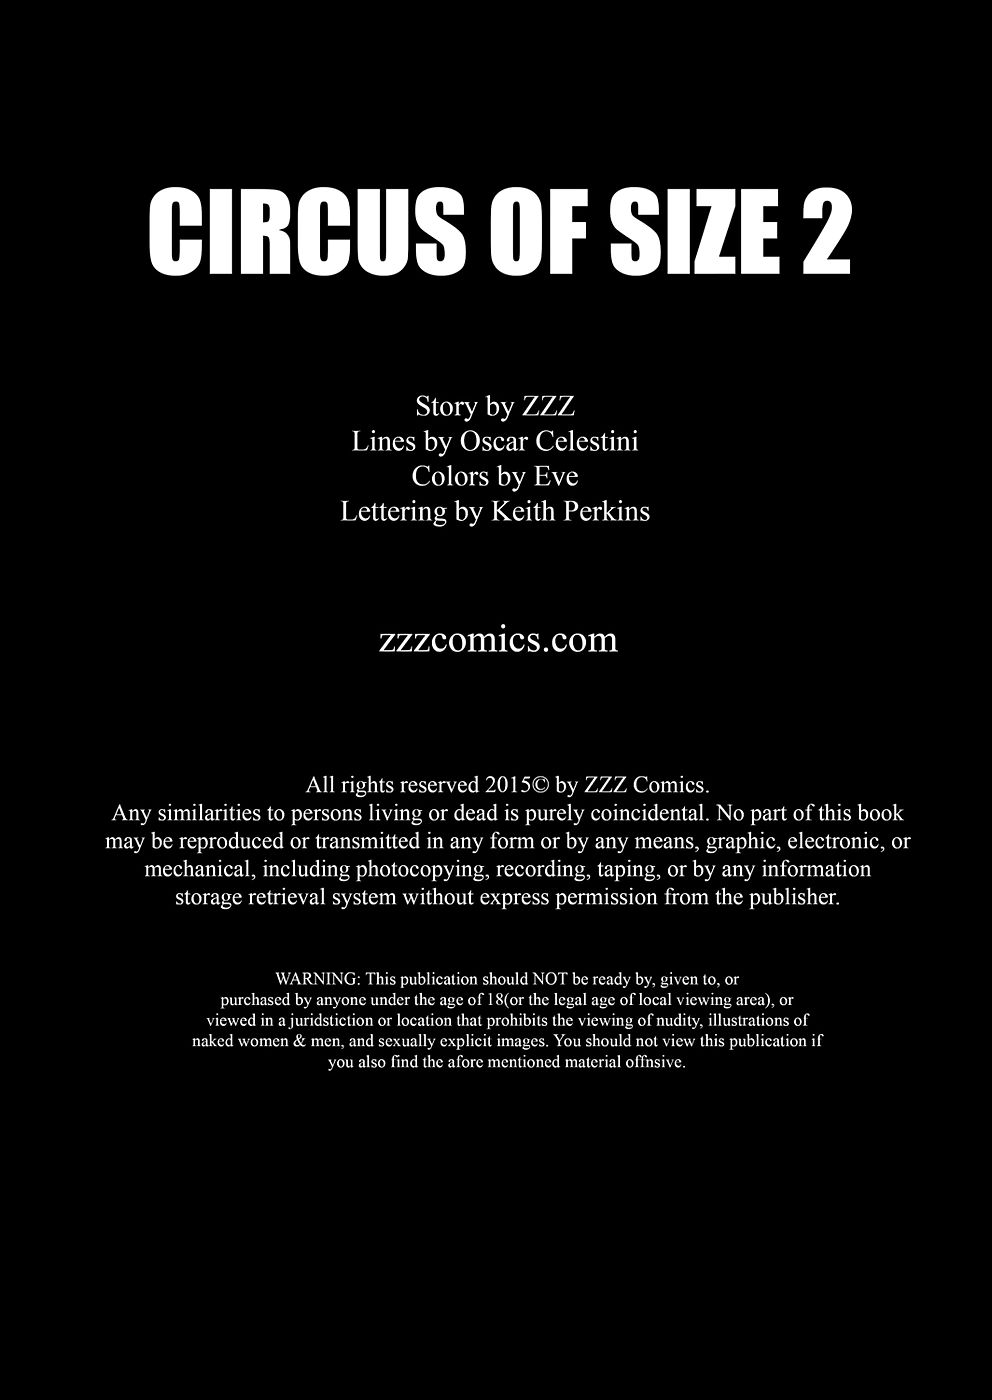 zzz ณะละครสัตว์ ของ ขนาด 2 page 1